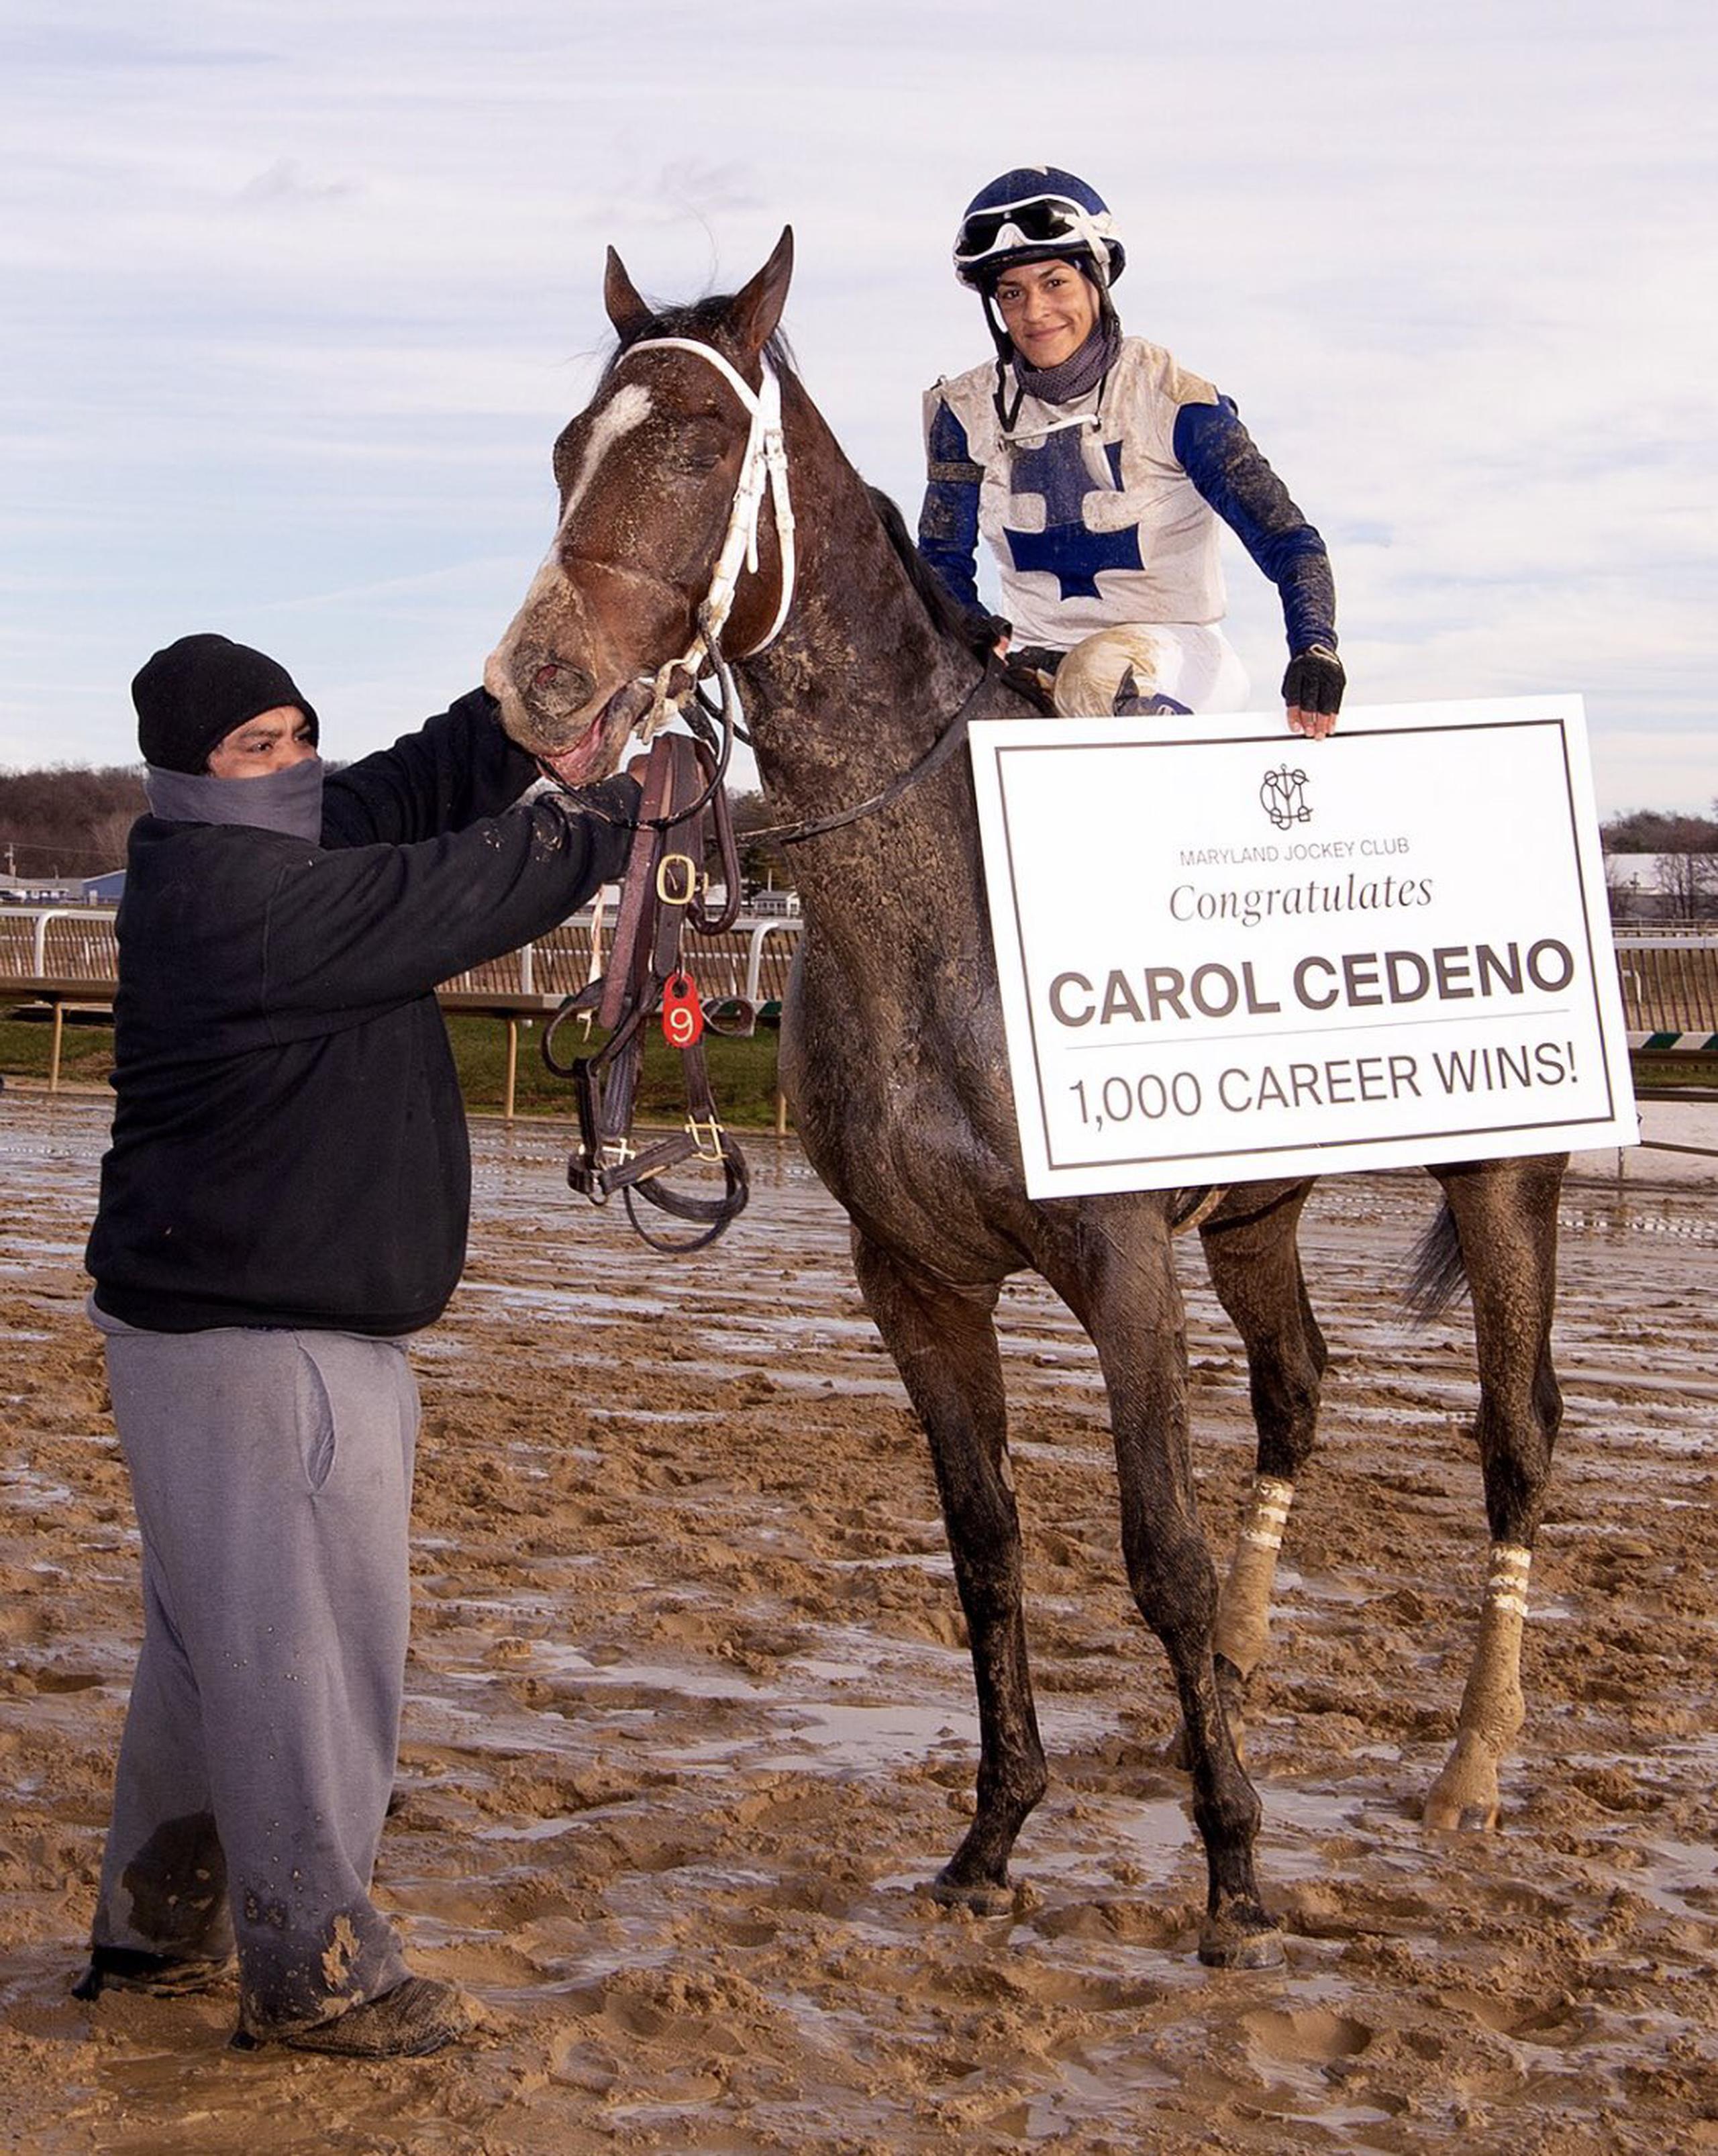 Carol Cedeño muestra el cartel de celebración de los 1,000 triunfos que le hizo el Maryland Jockey Club.